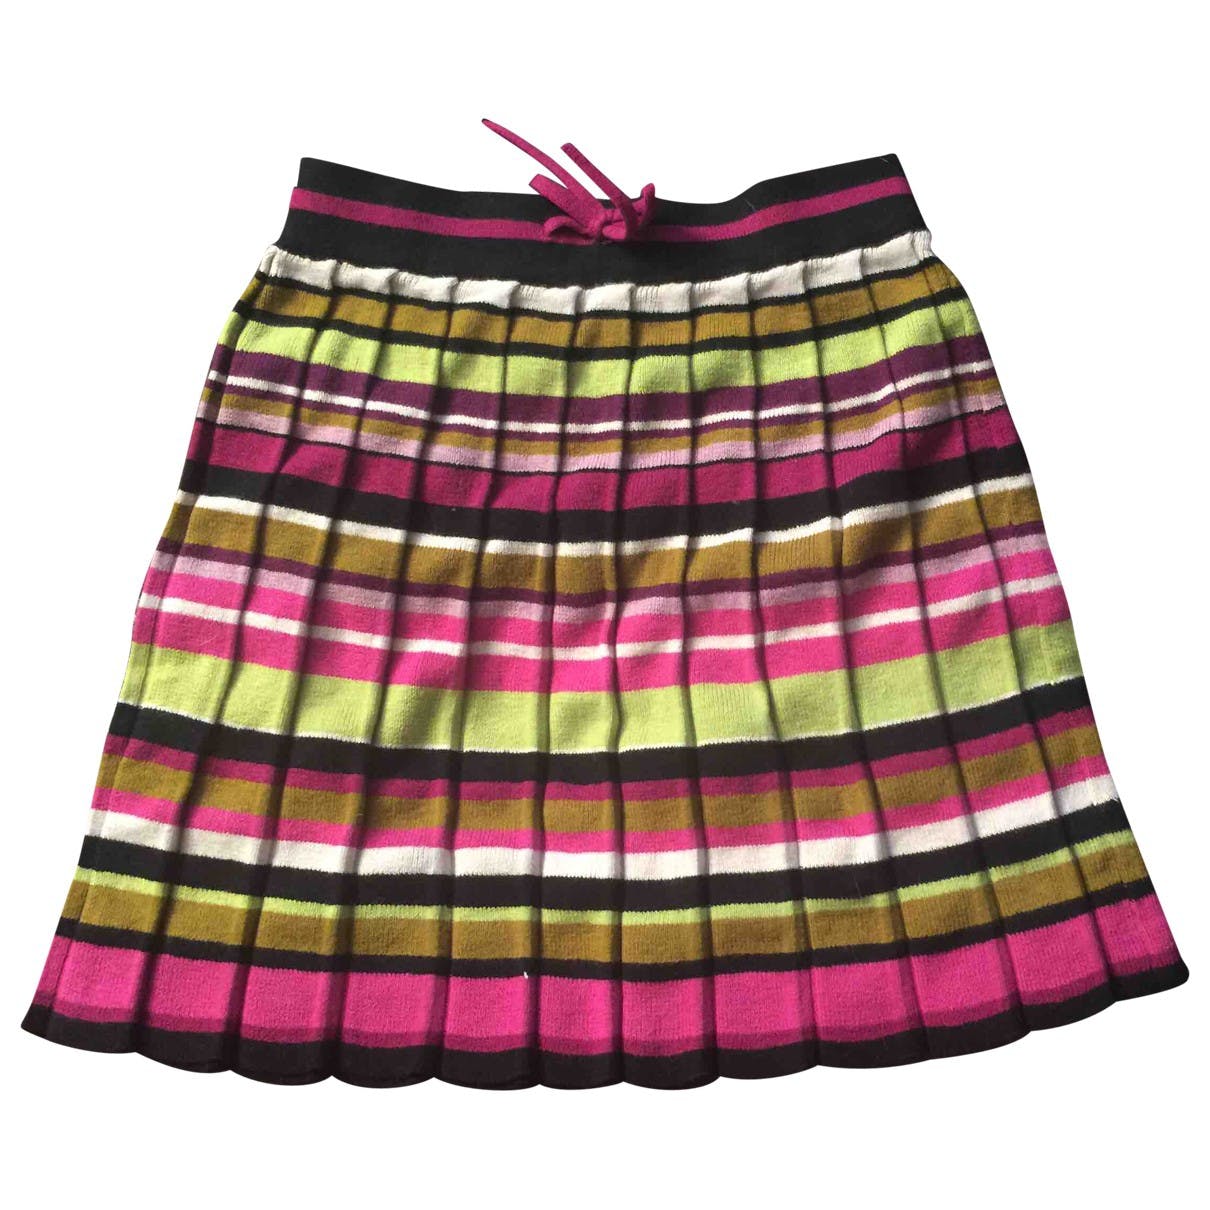 tennis skirt fashion